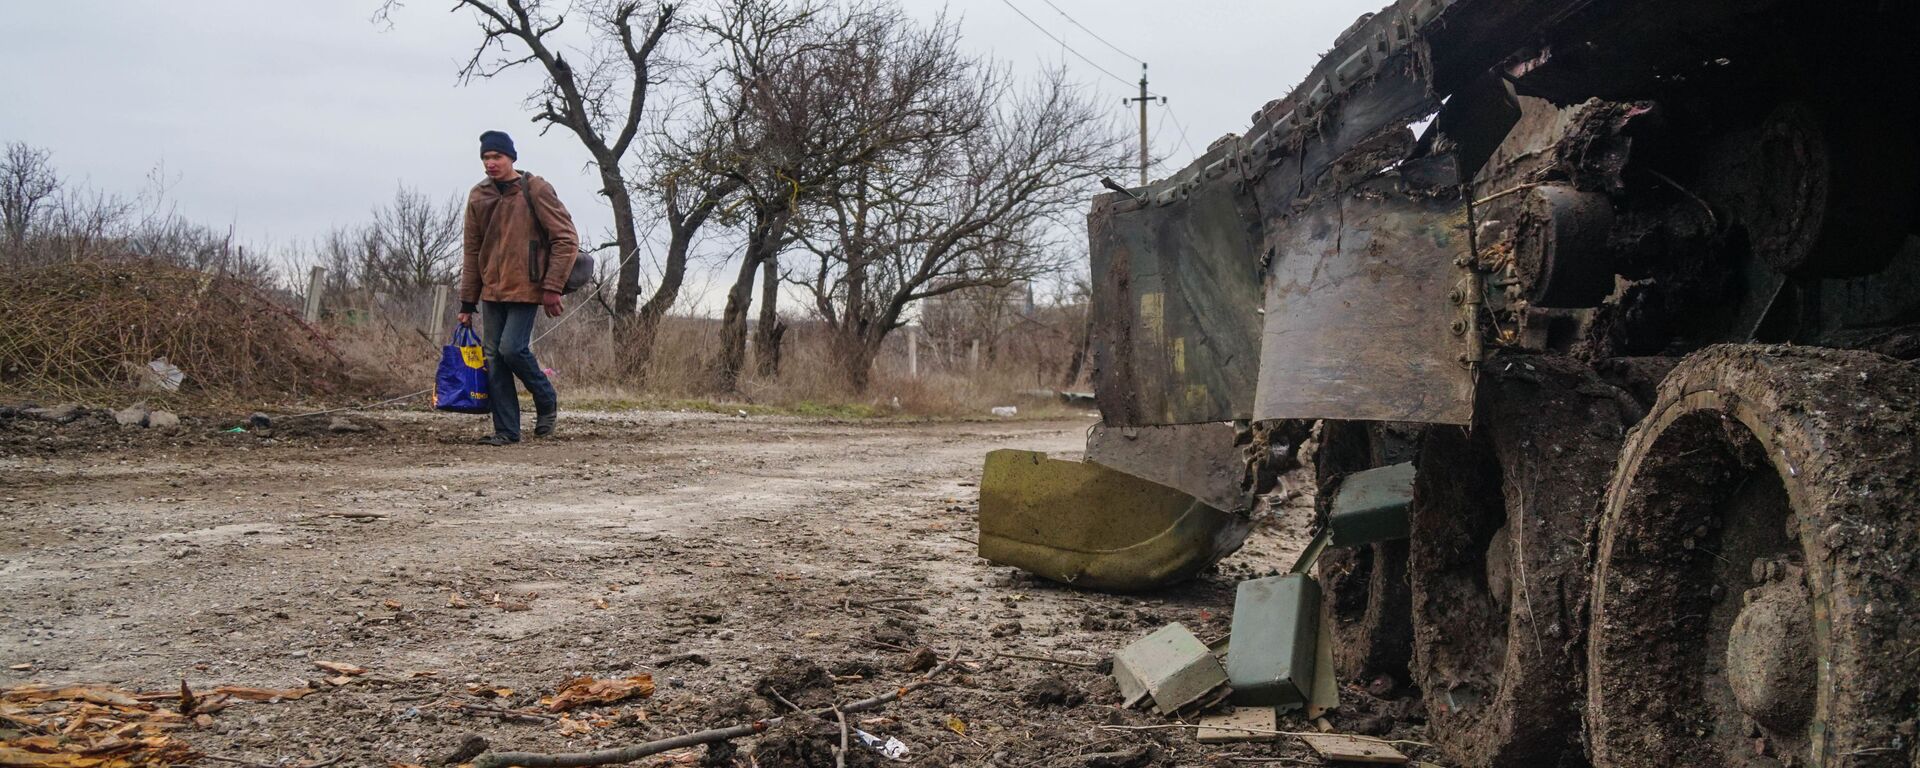 Một cư dân làng Gnutovo đi ngang qua chiếc xe tăng của quân đội Ukraina bị bắn cháy gần Mariupol - Sputnik Việt Nam, 1920, 06.03.2022